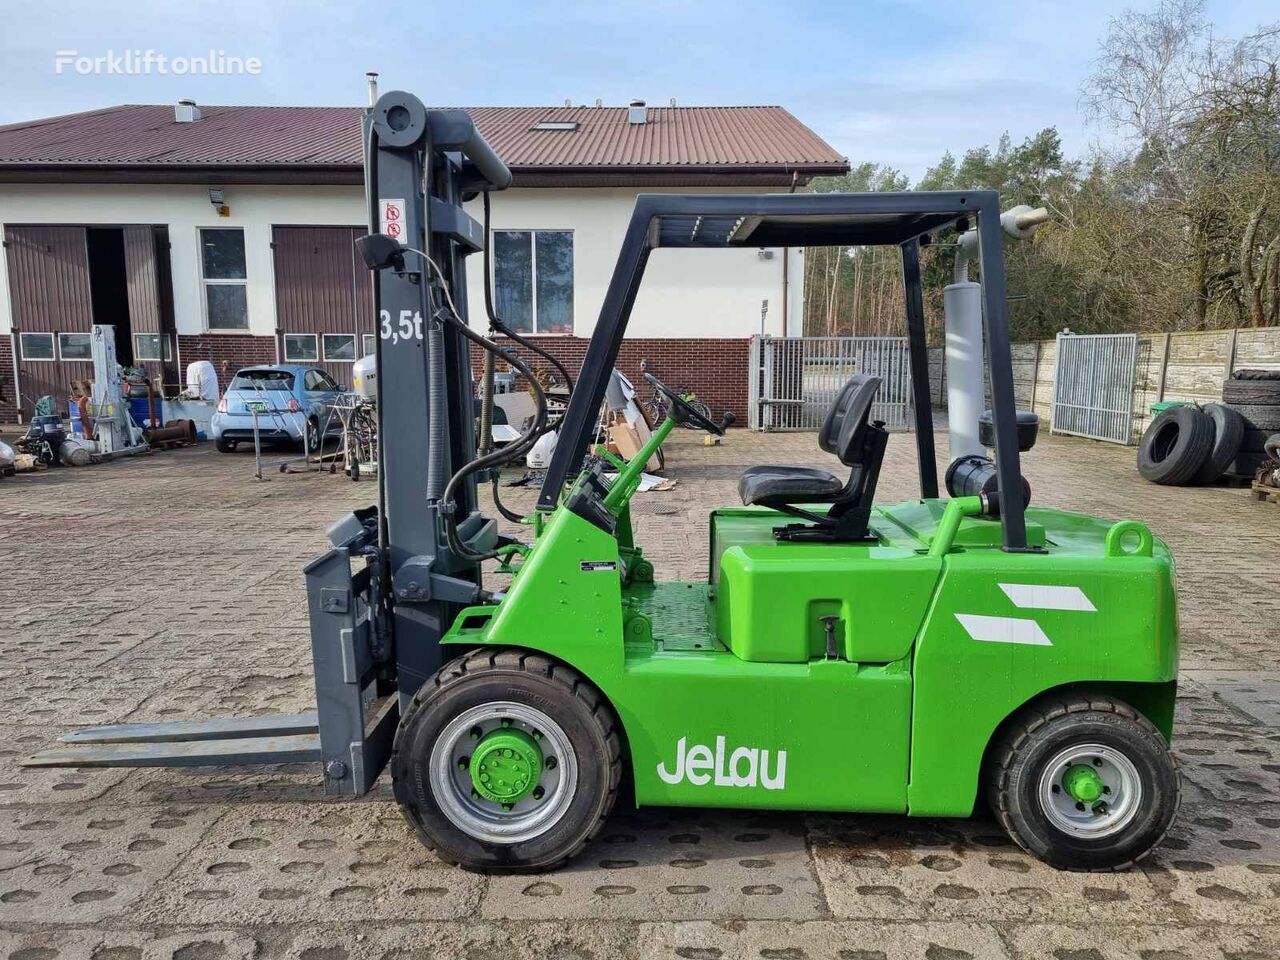 dieselový vysokozdvižný vozík Linde JELAU 3500 kg diesel